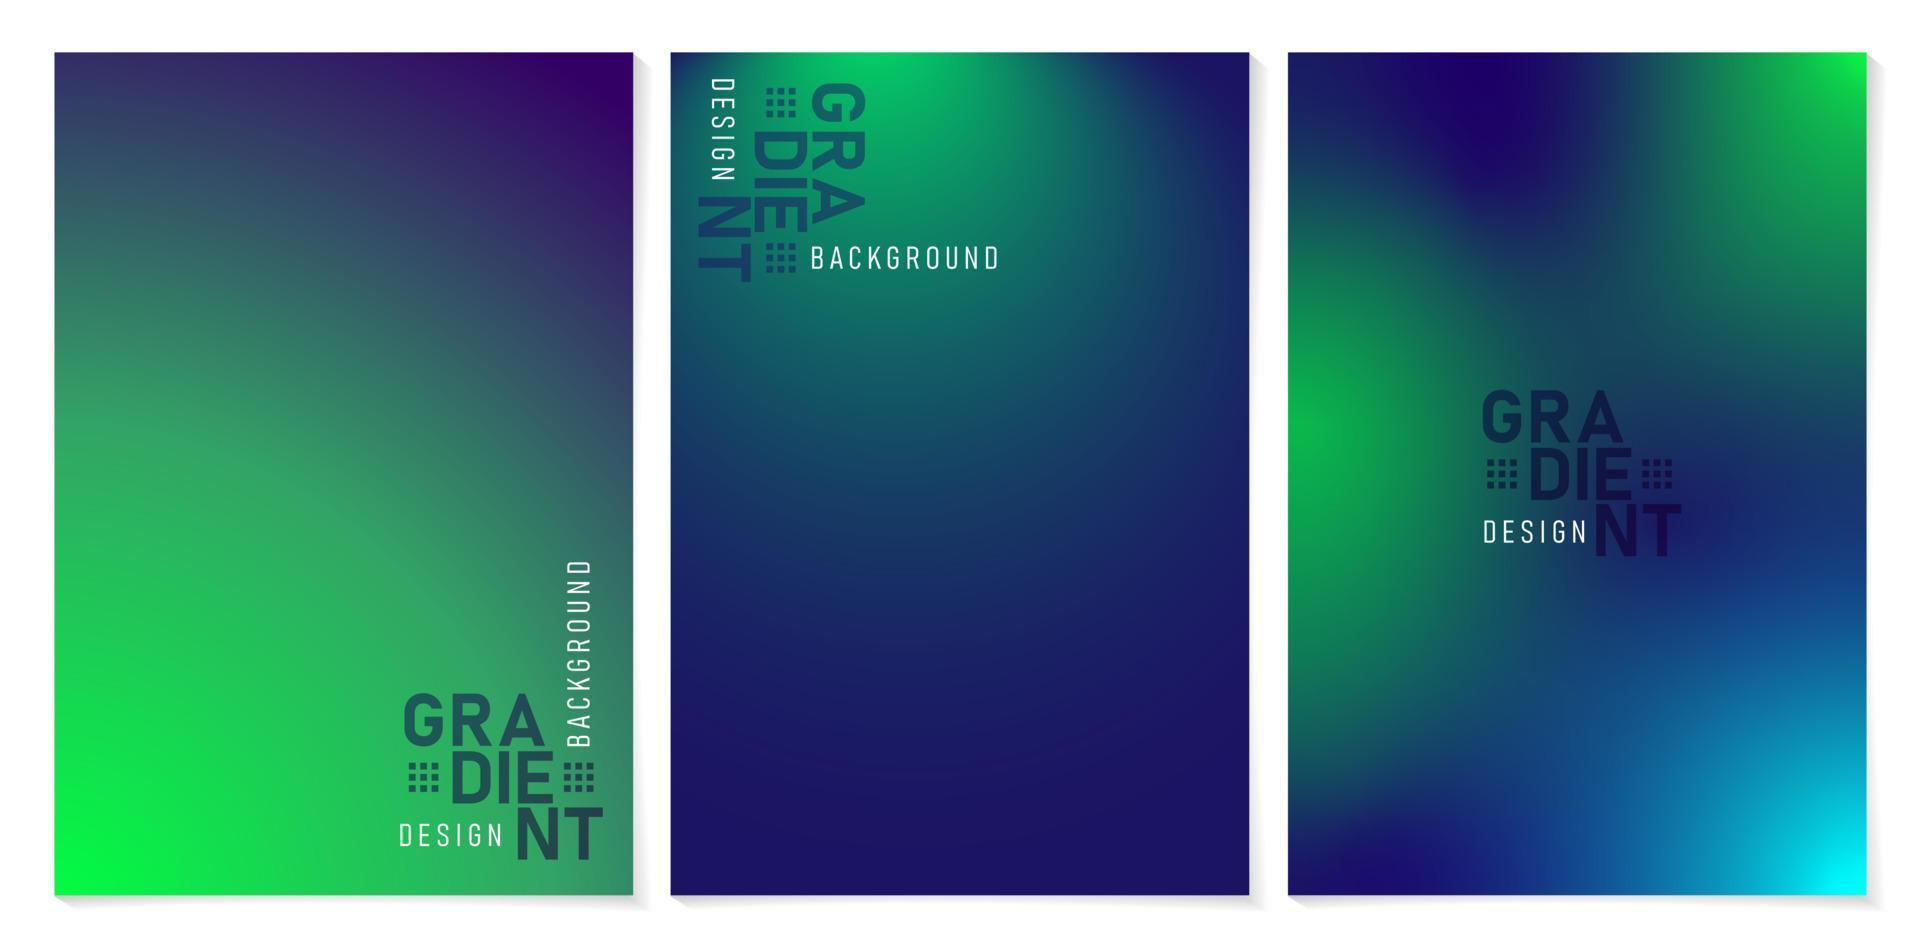 conjunto de tres banners con fondos degradados en verde y azul oscuro, aplicable para banner de sitio web, plantilla de diseño web, letrero, campaña publicitaria, publicidad, publicidad, publicaciones en medios sociales, video en movimiento vector